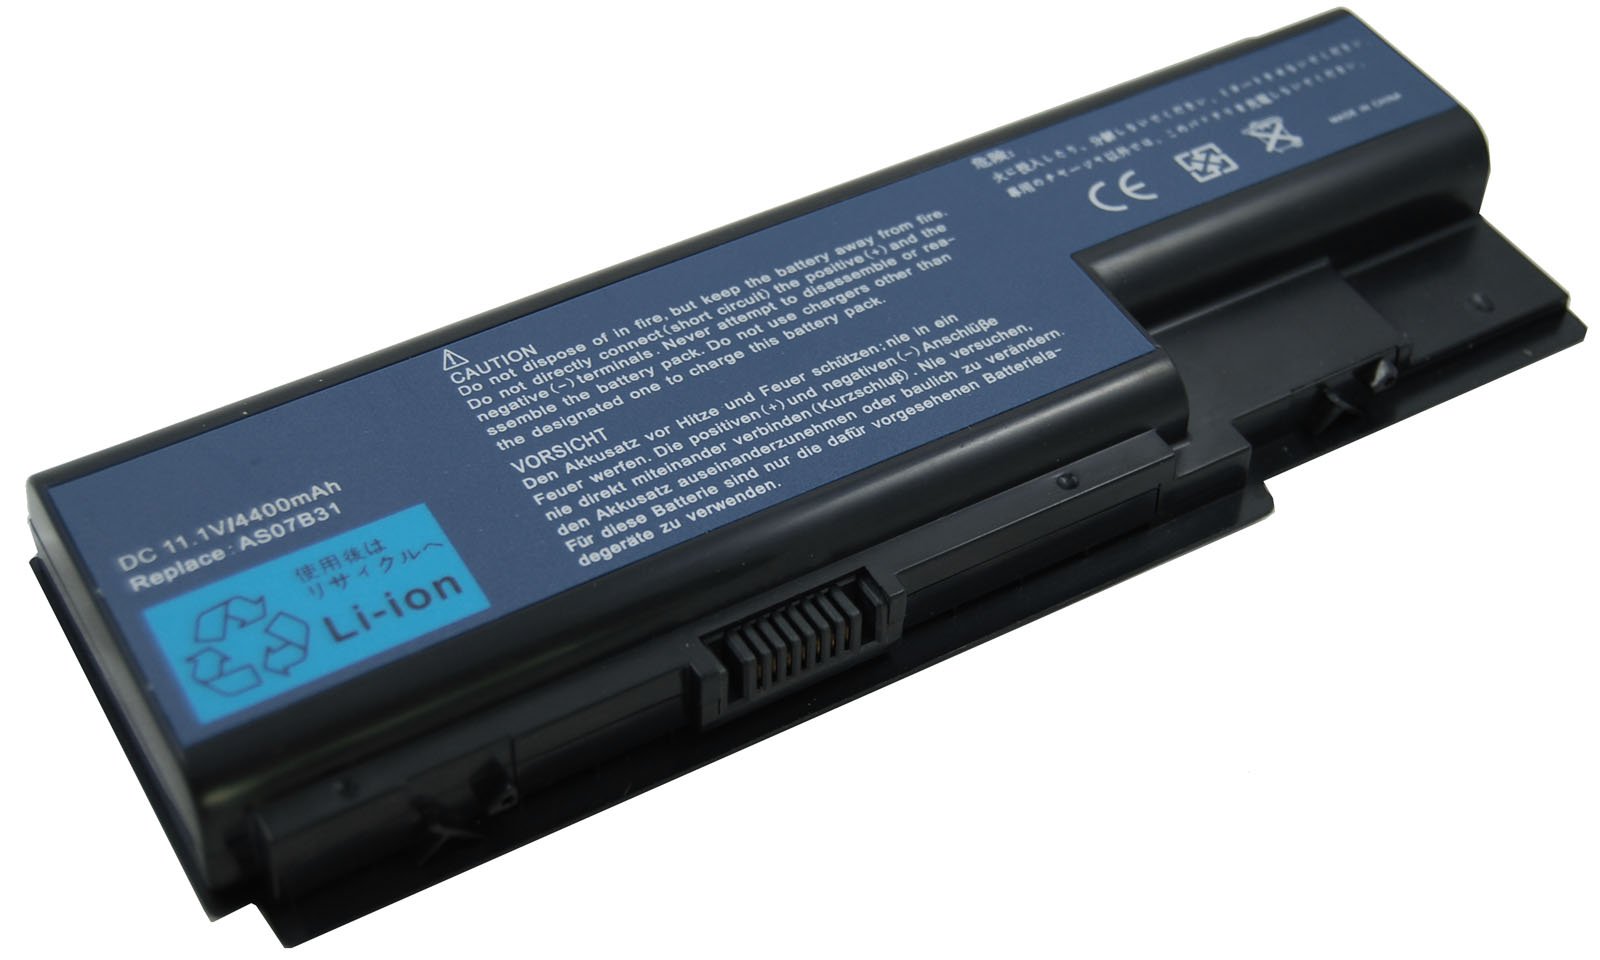 Asus Laptop battery repair/replacement